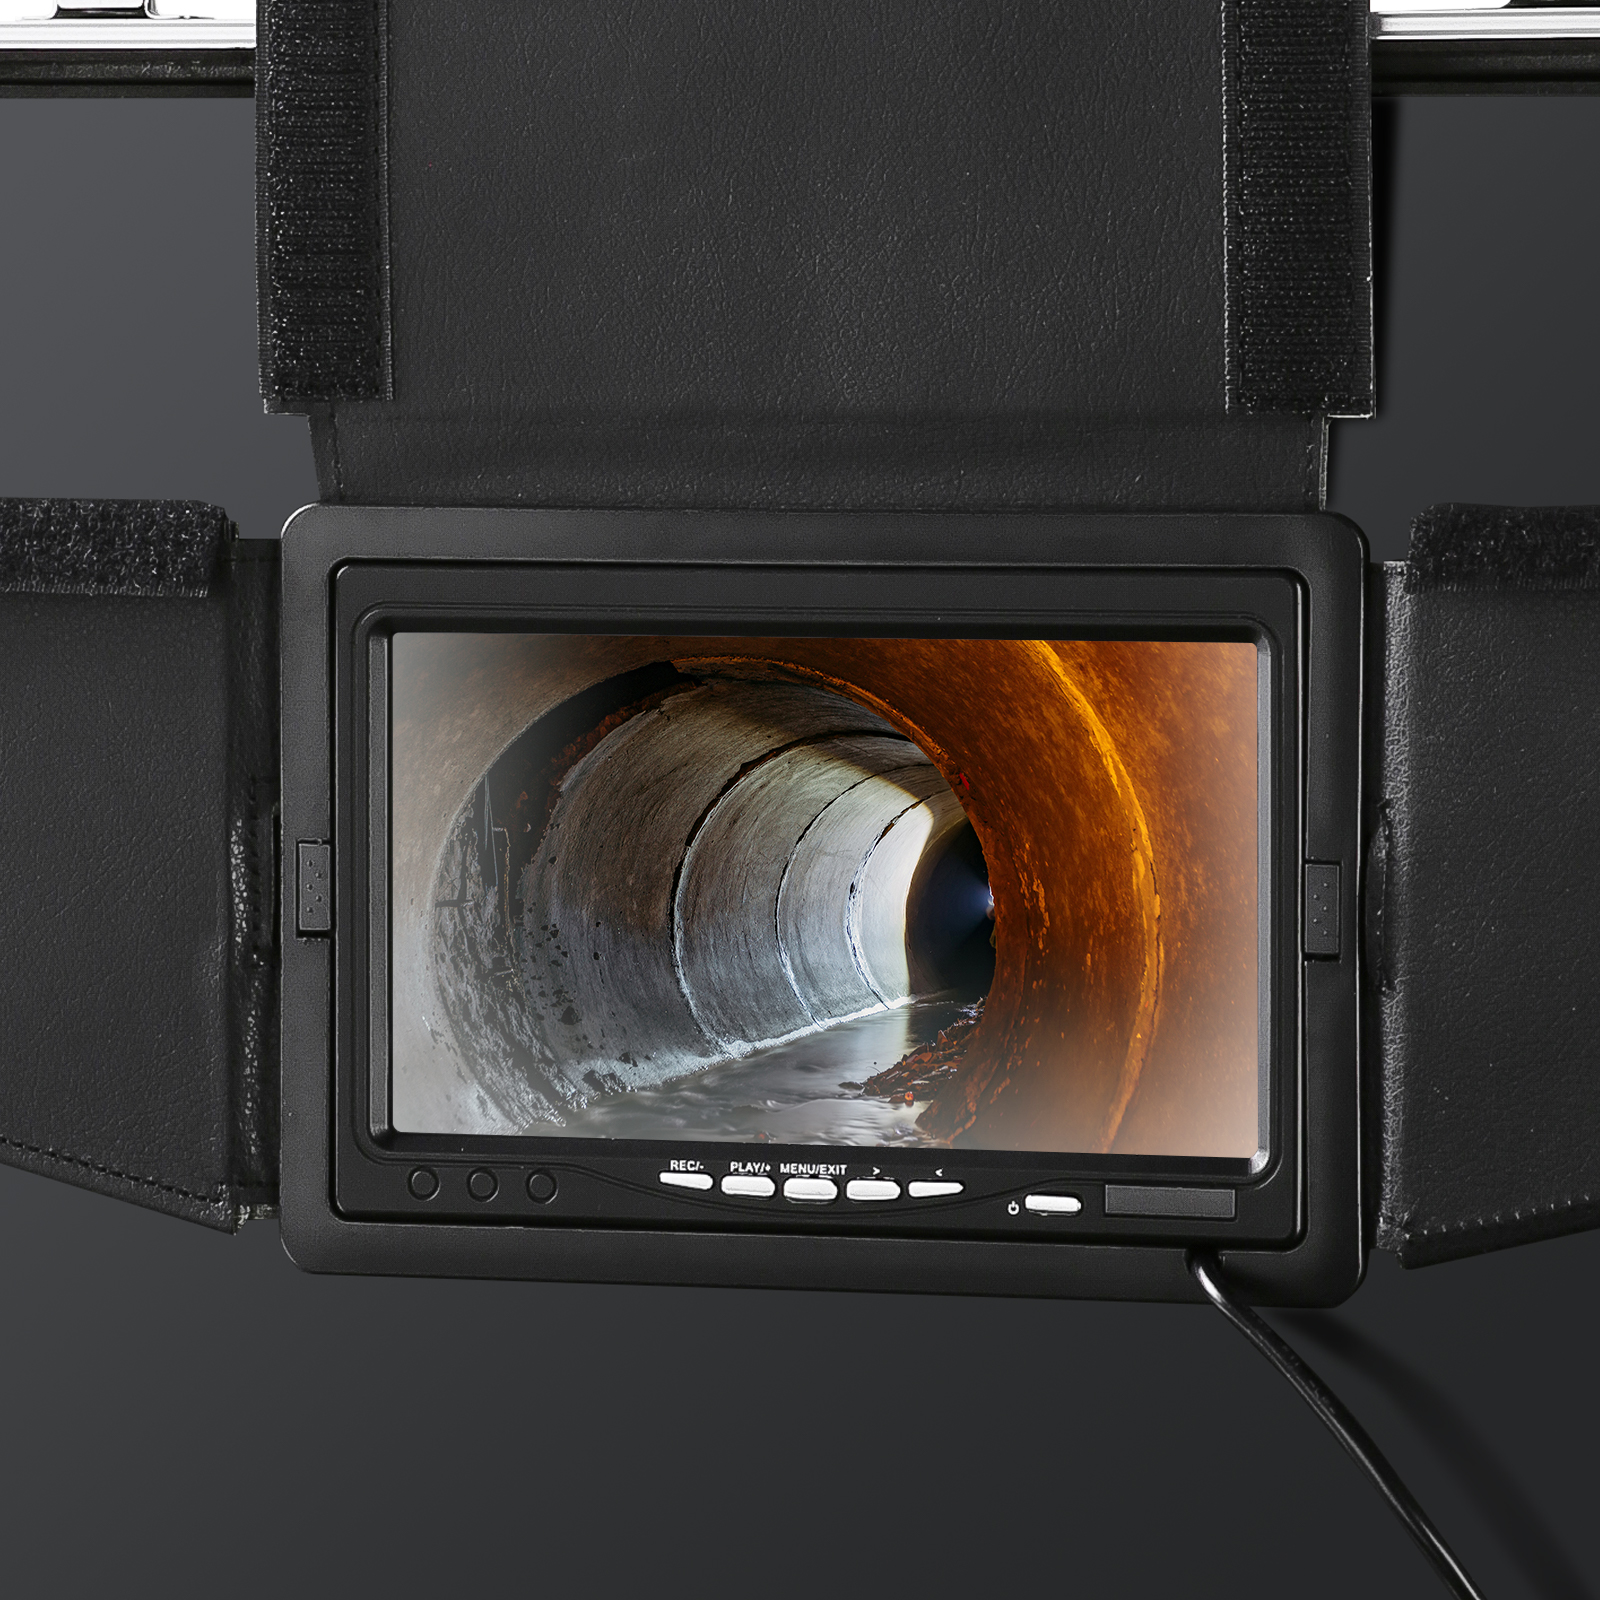  Cámara endoscópica Cámara de inspección de tuberías Cámara  subacuática IP68 Impermeable Endoscopio de tubería industrial con zoom 4X  LCD de 5 pulgadas (328.1 ft de agua) (longitud del cable: 6.6 ft, 